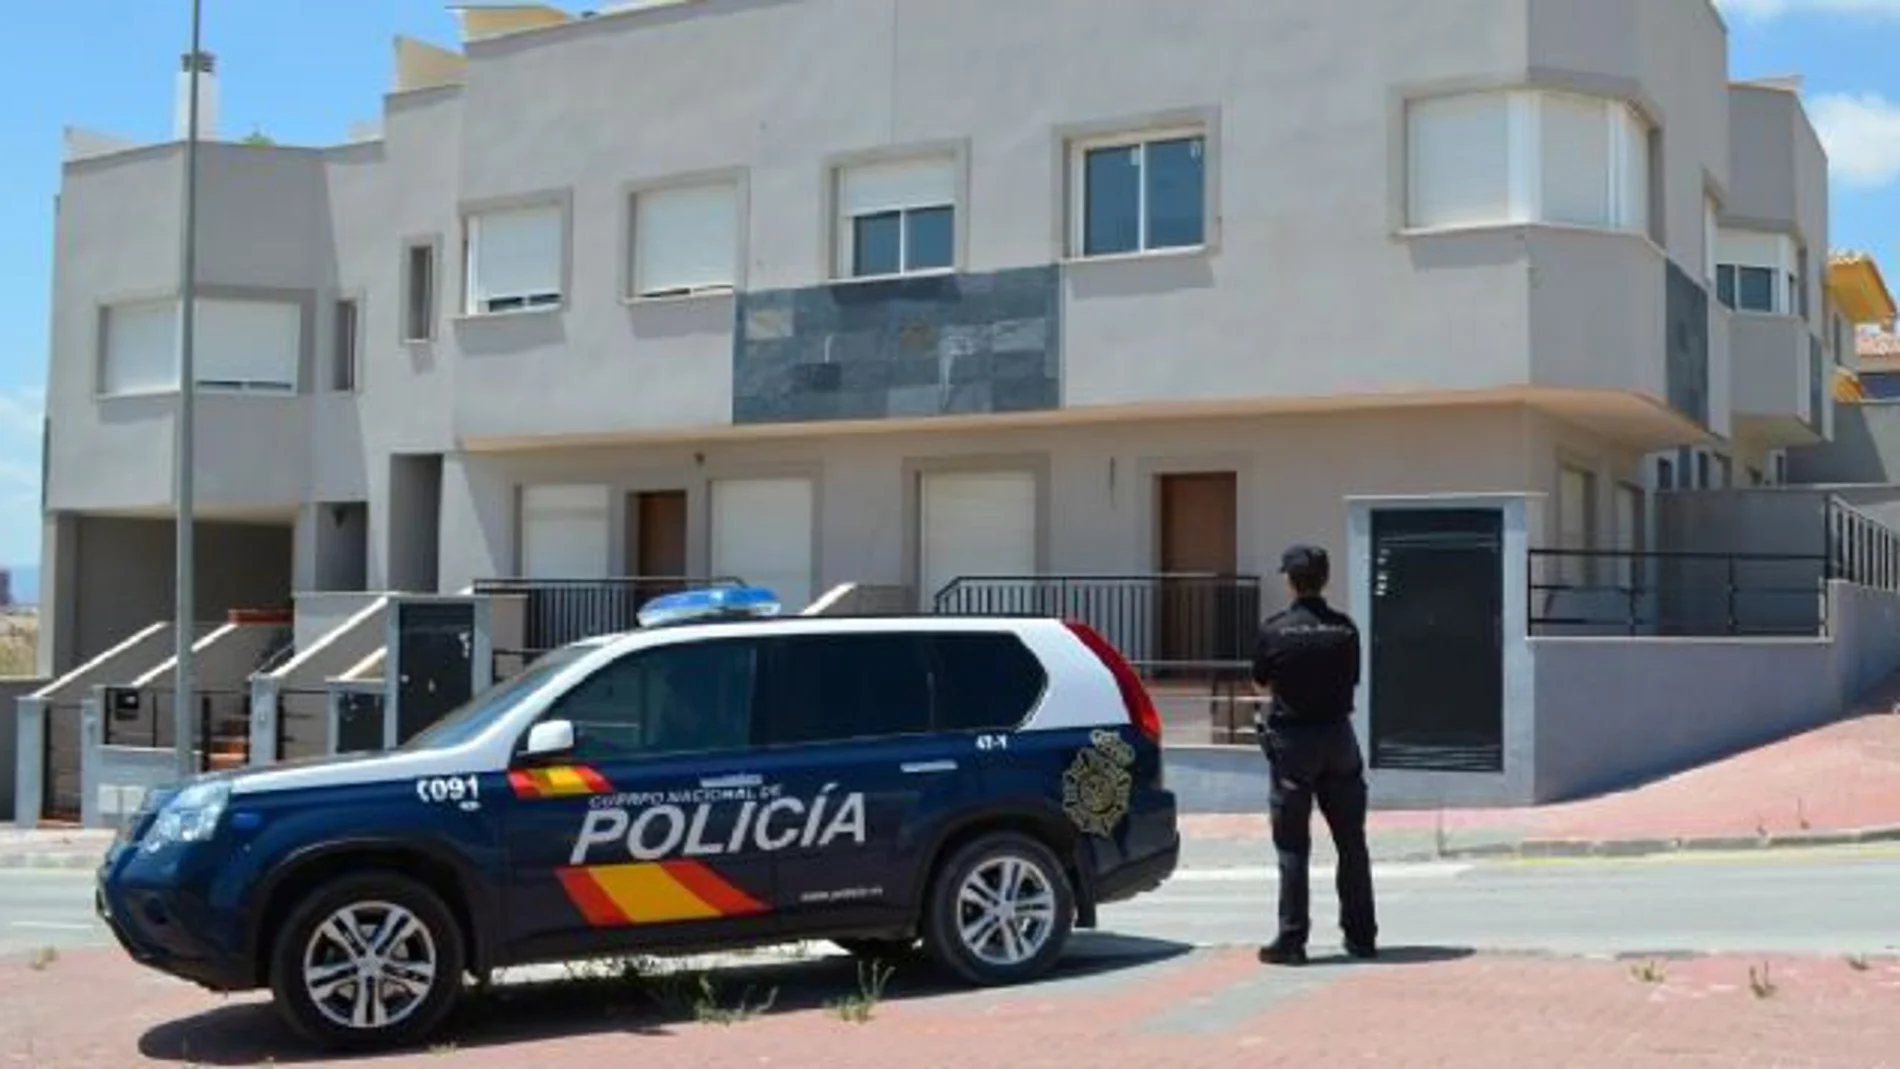 El Ayuntamiento de Molina de Segura intensificará la presencia policial en los barrios y urbanizaciones de la zona para prevenir más ataques violentos